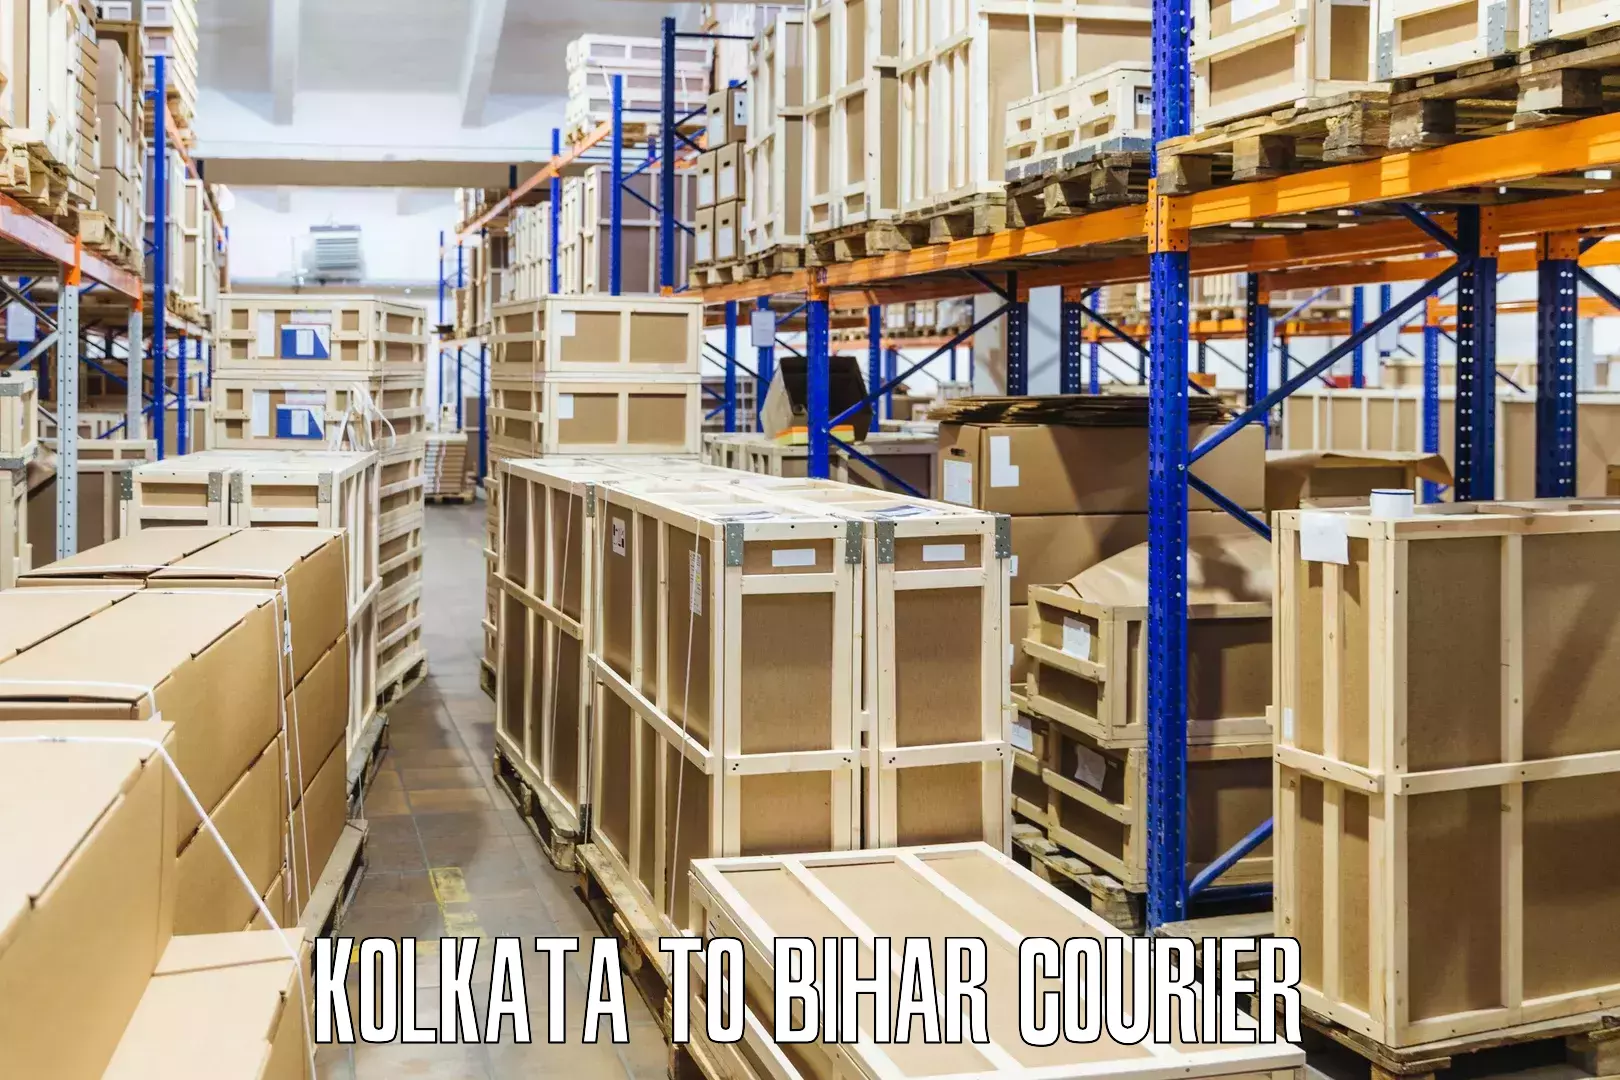 24/7 shipping services in Kolkata to Bihar